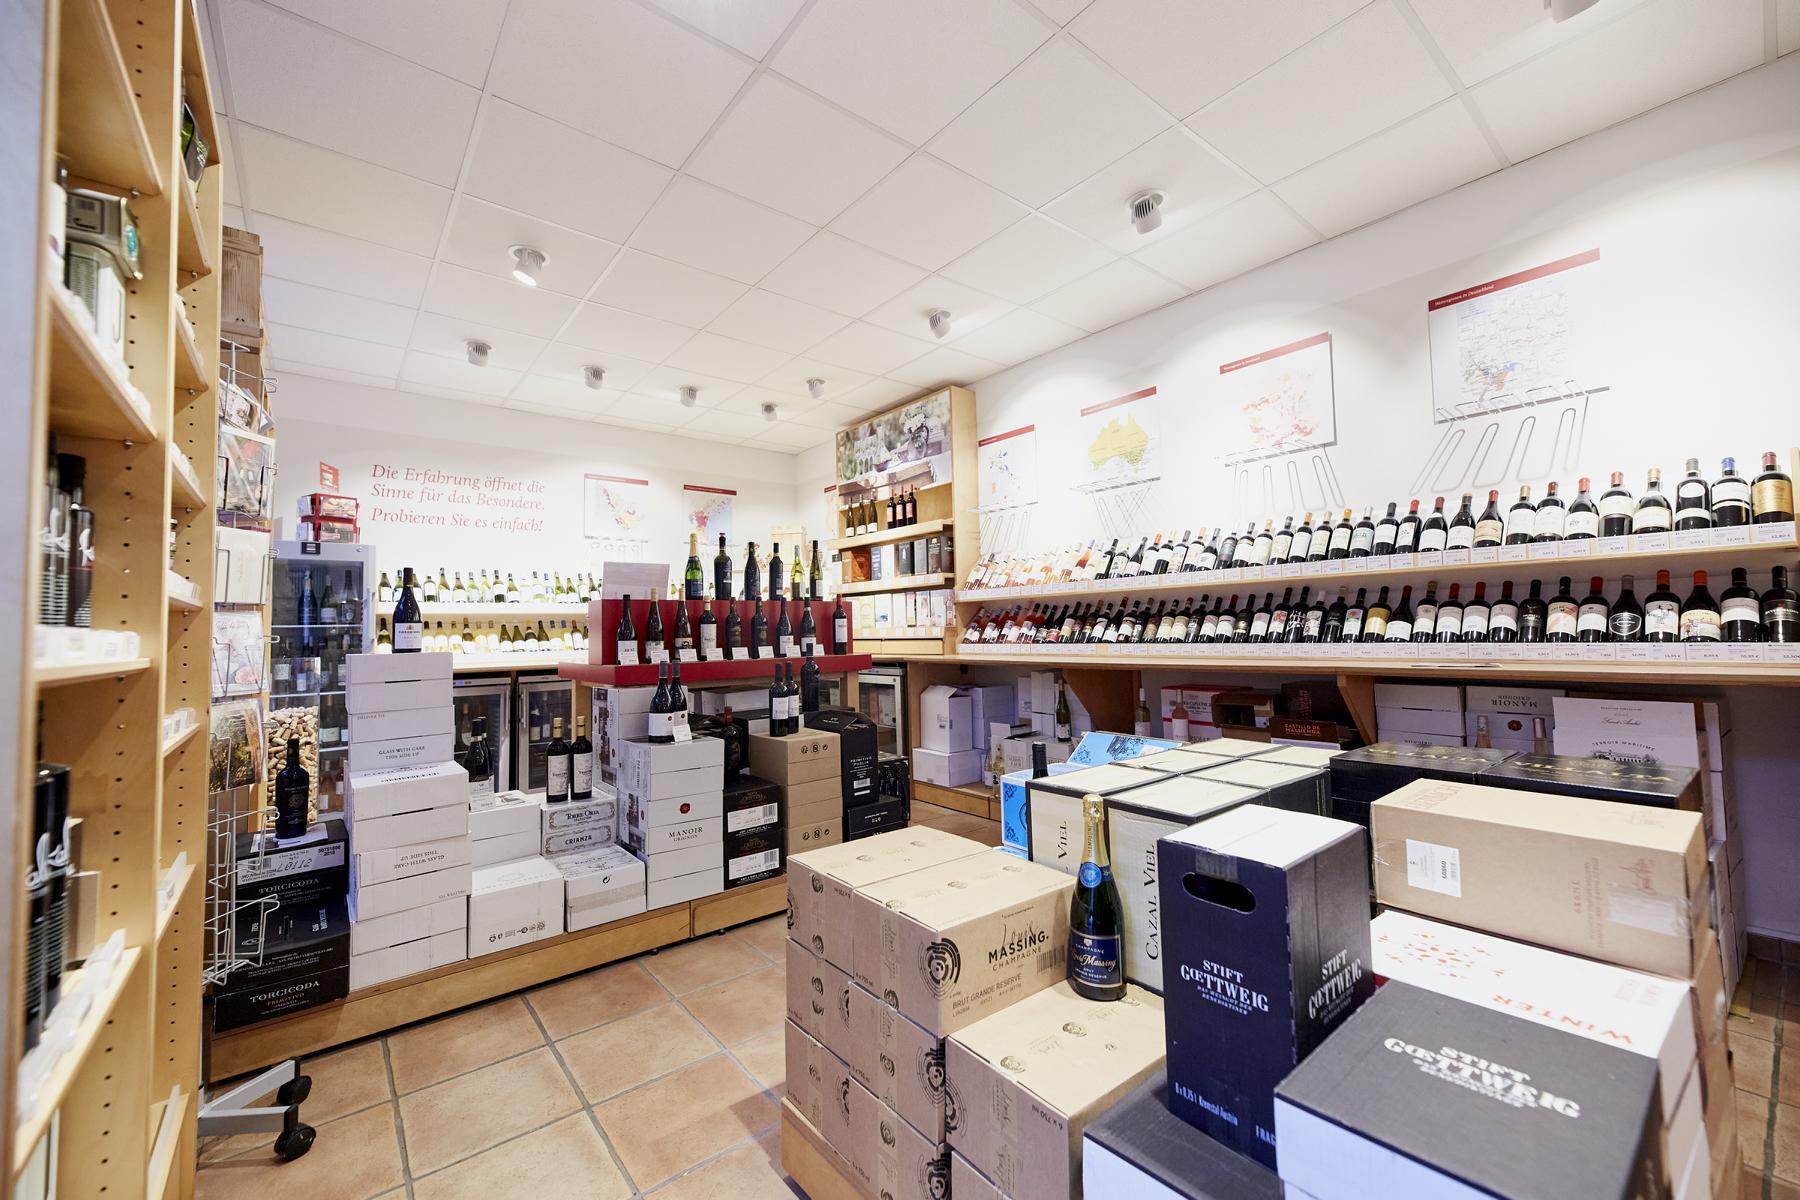 Bilder Jacques’ Wein-Depot Erkelenz